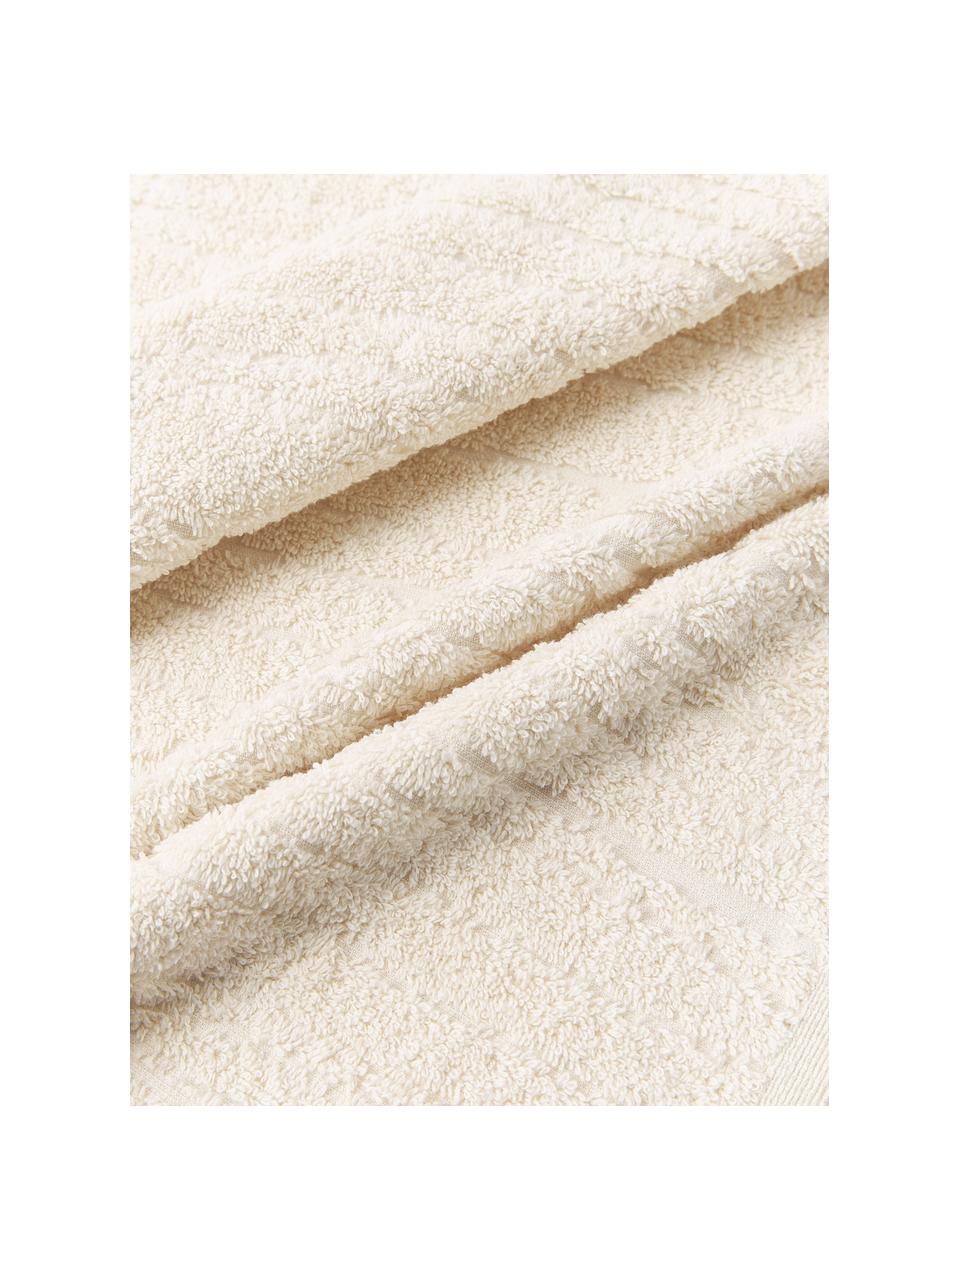 Sada ručníků z bavlny Audrina, různé velikosti sady, Světle béžová, Sada s různými velikostmi